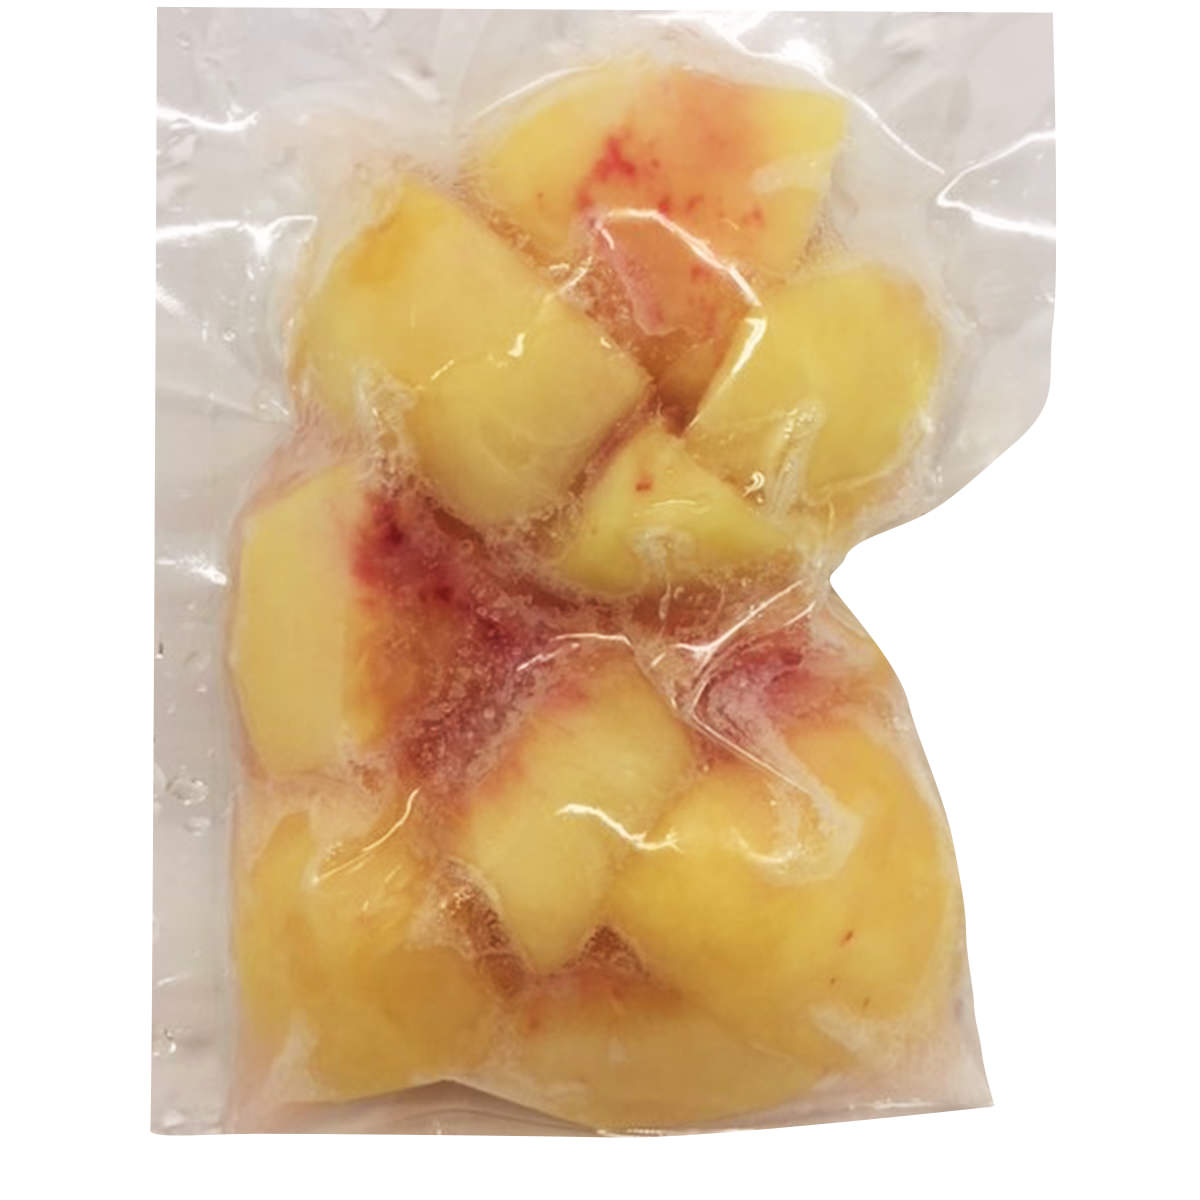 桃 国産 冷凍桃 4袋 詰合せ 桃 フルーツ 冷凍 冷凍フルーツ もも 国内産 真空パック カットフルーツ スムージー デトックスウォーター NORUCA